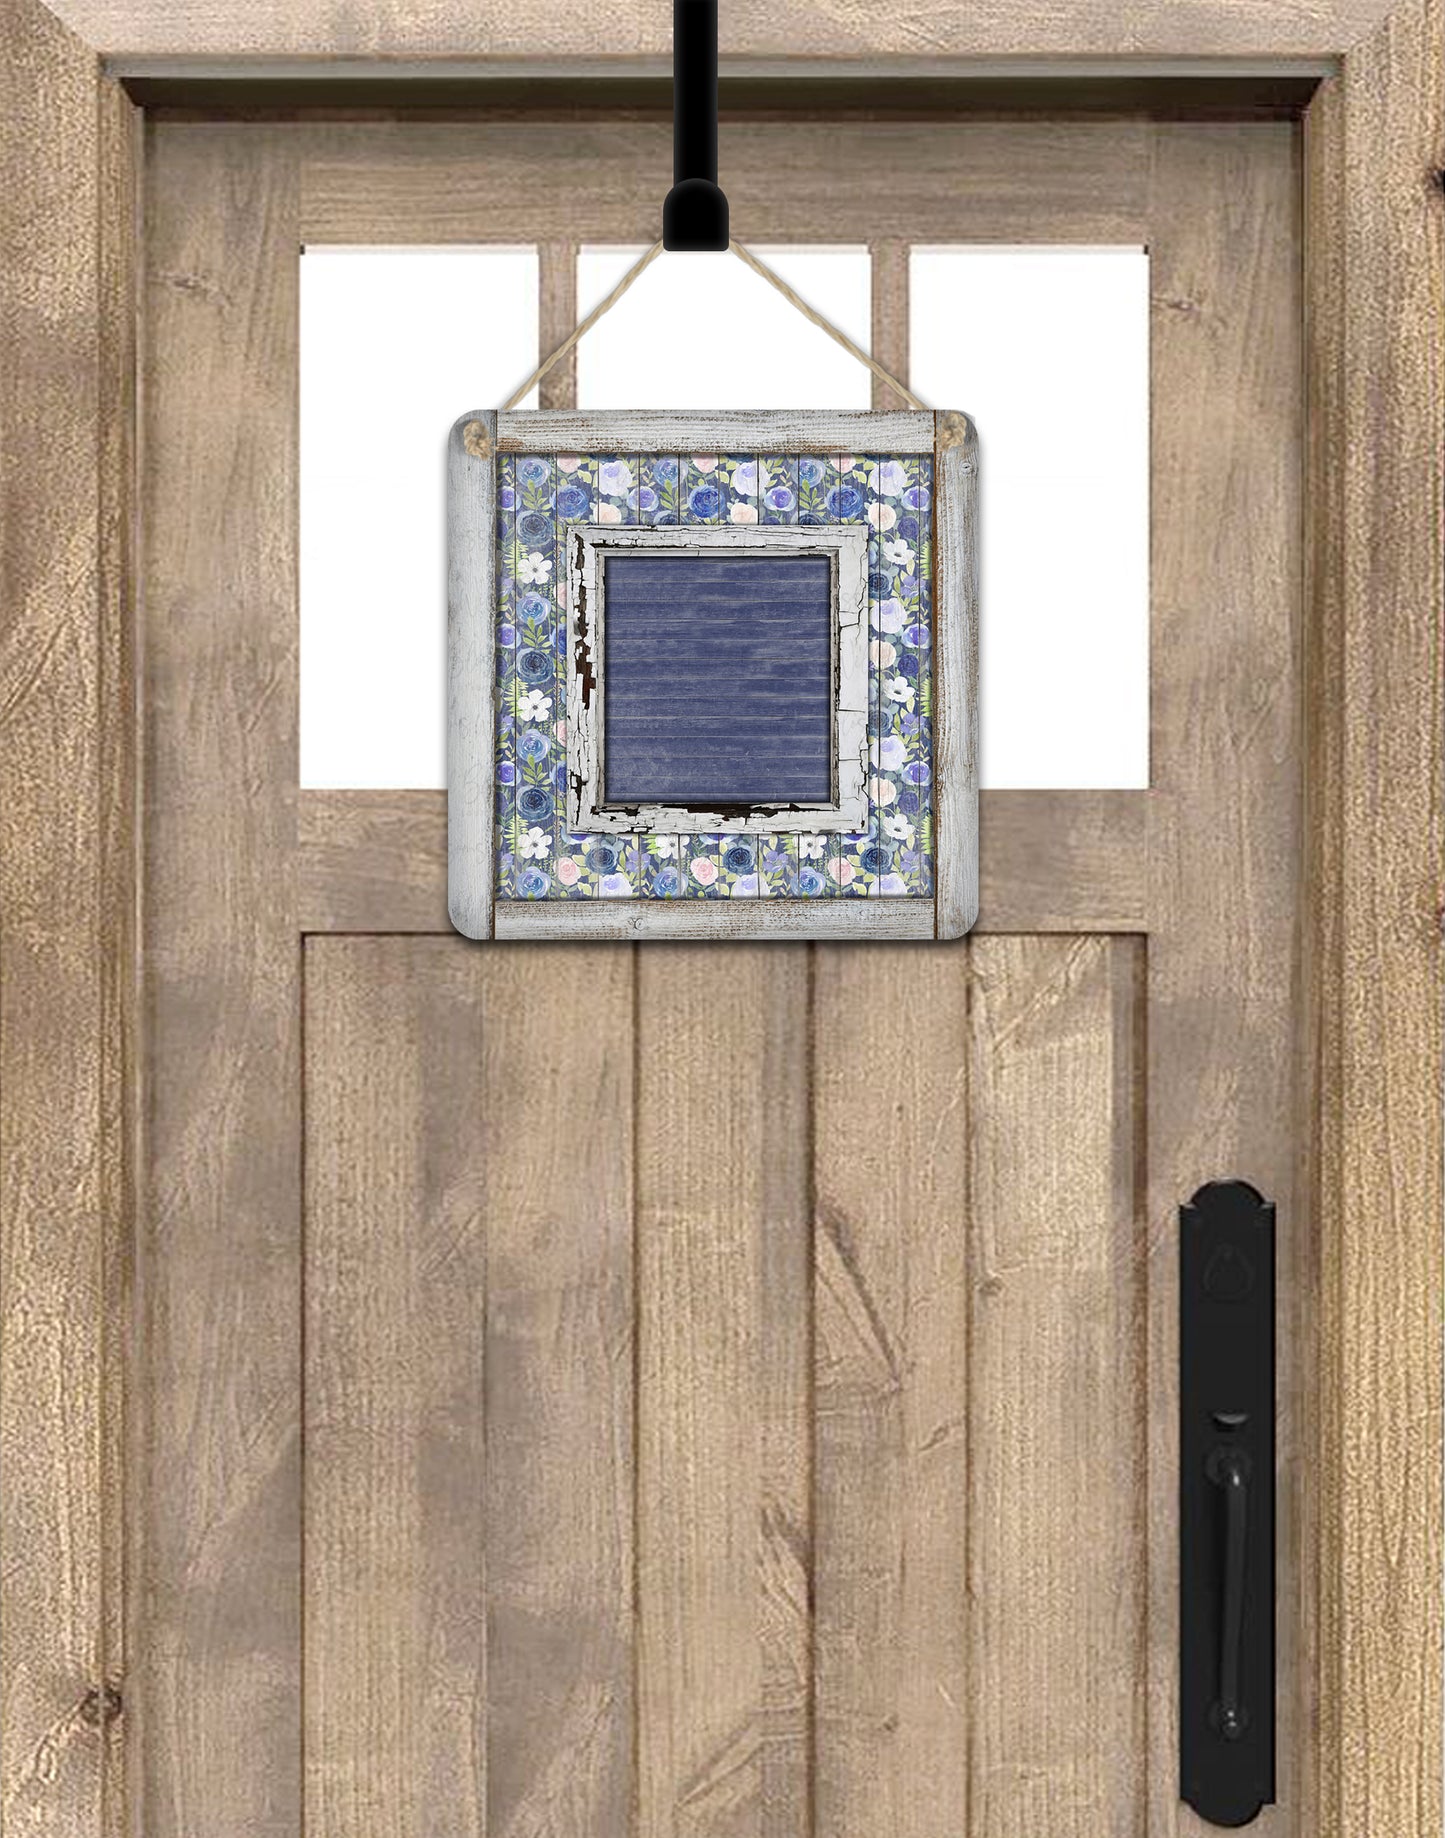 Wooden Blue Floral Door Hanger